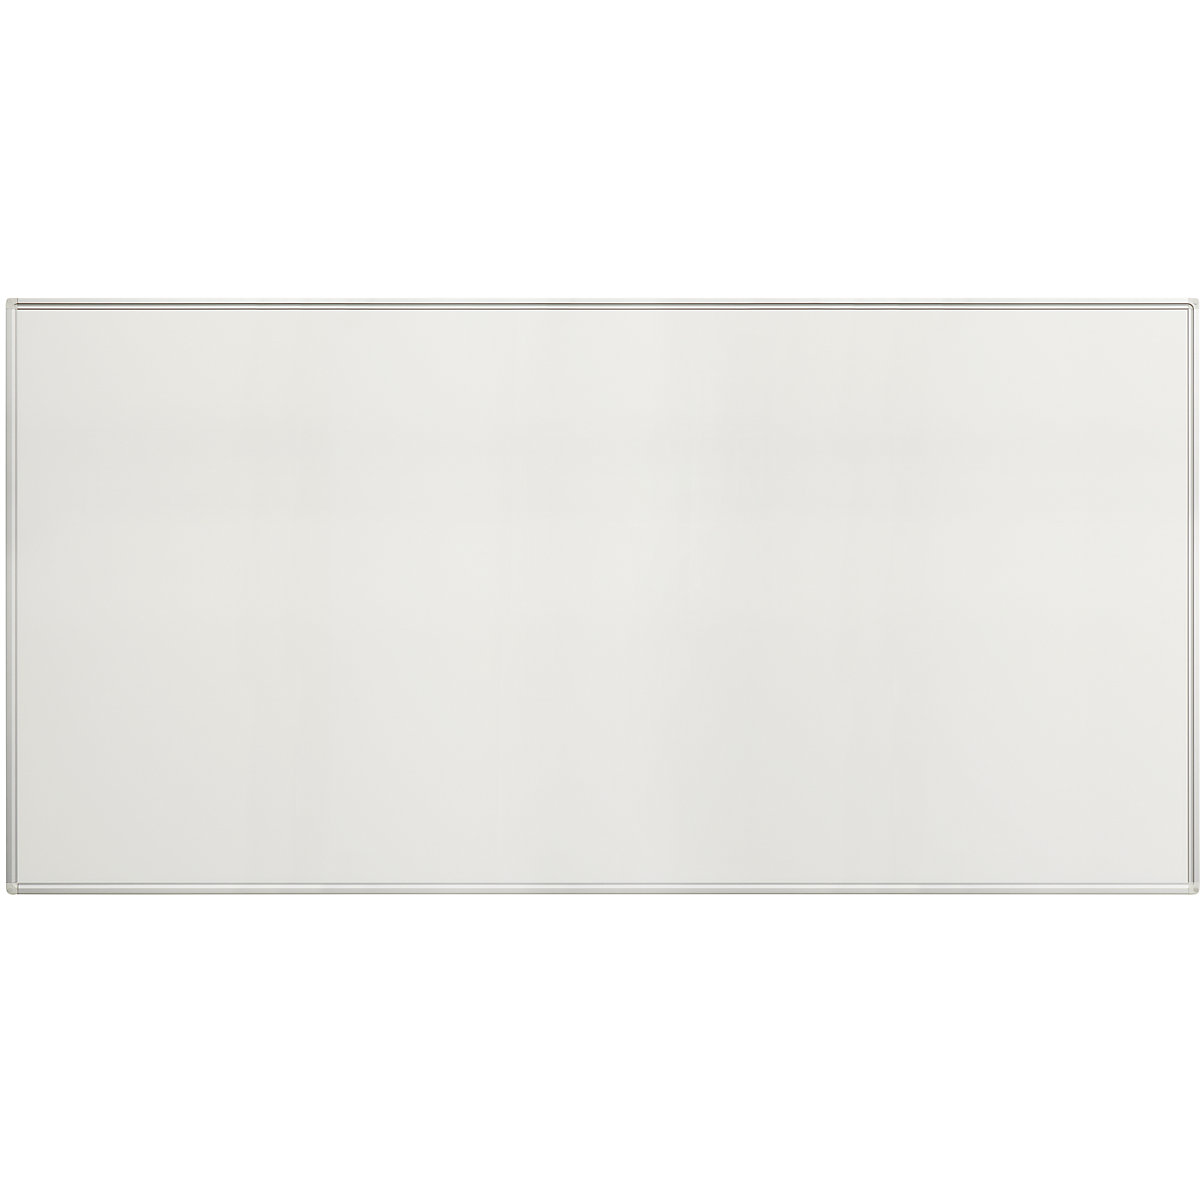 EUROKRAFTpro – Biała tablica Economy, blacha stalowa, lakierowana, szer. x wys. 2000 x 1000 mm